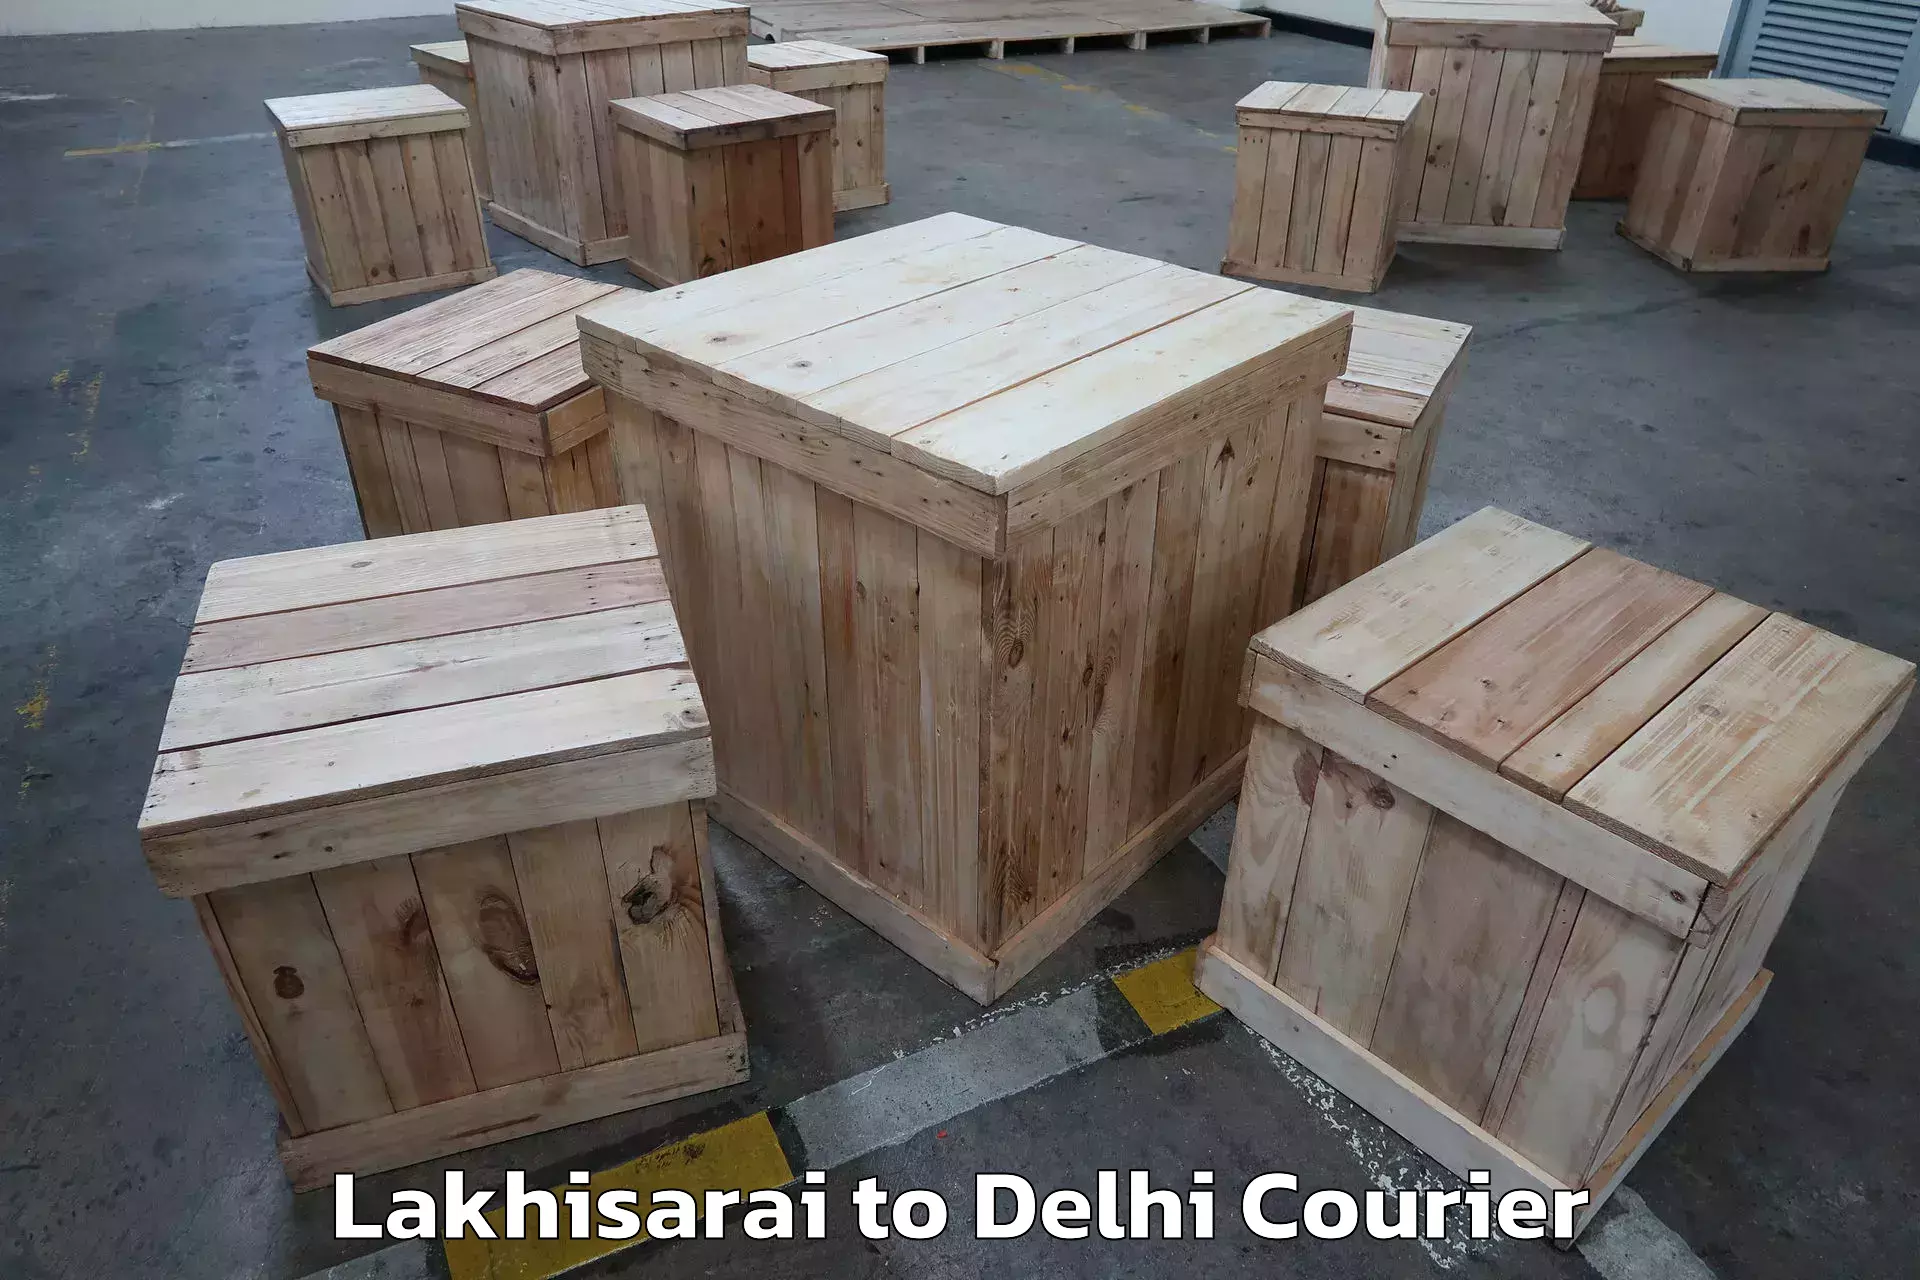 Residential moving experts Lakhisarai to Jamia Millia Islamia New Delhi